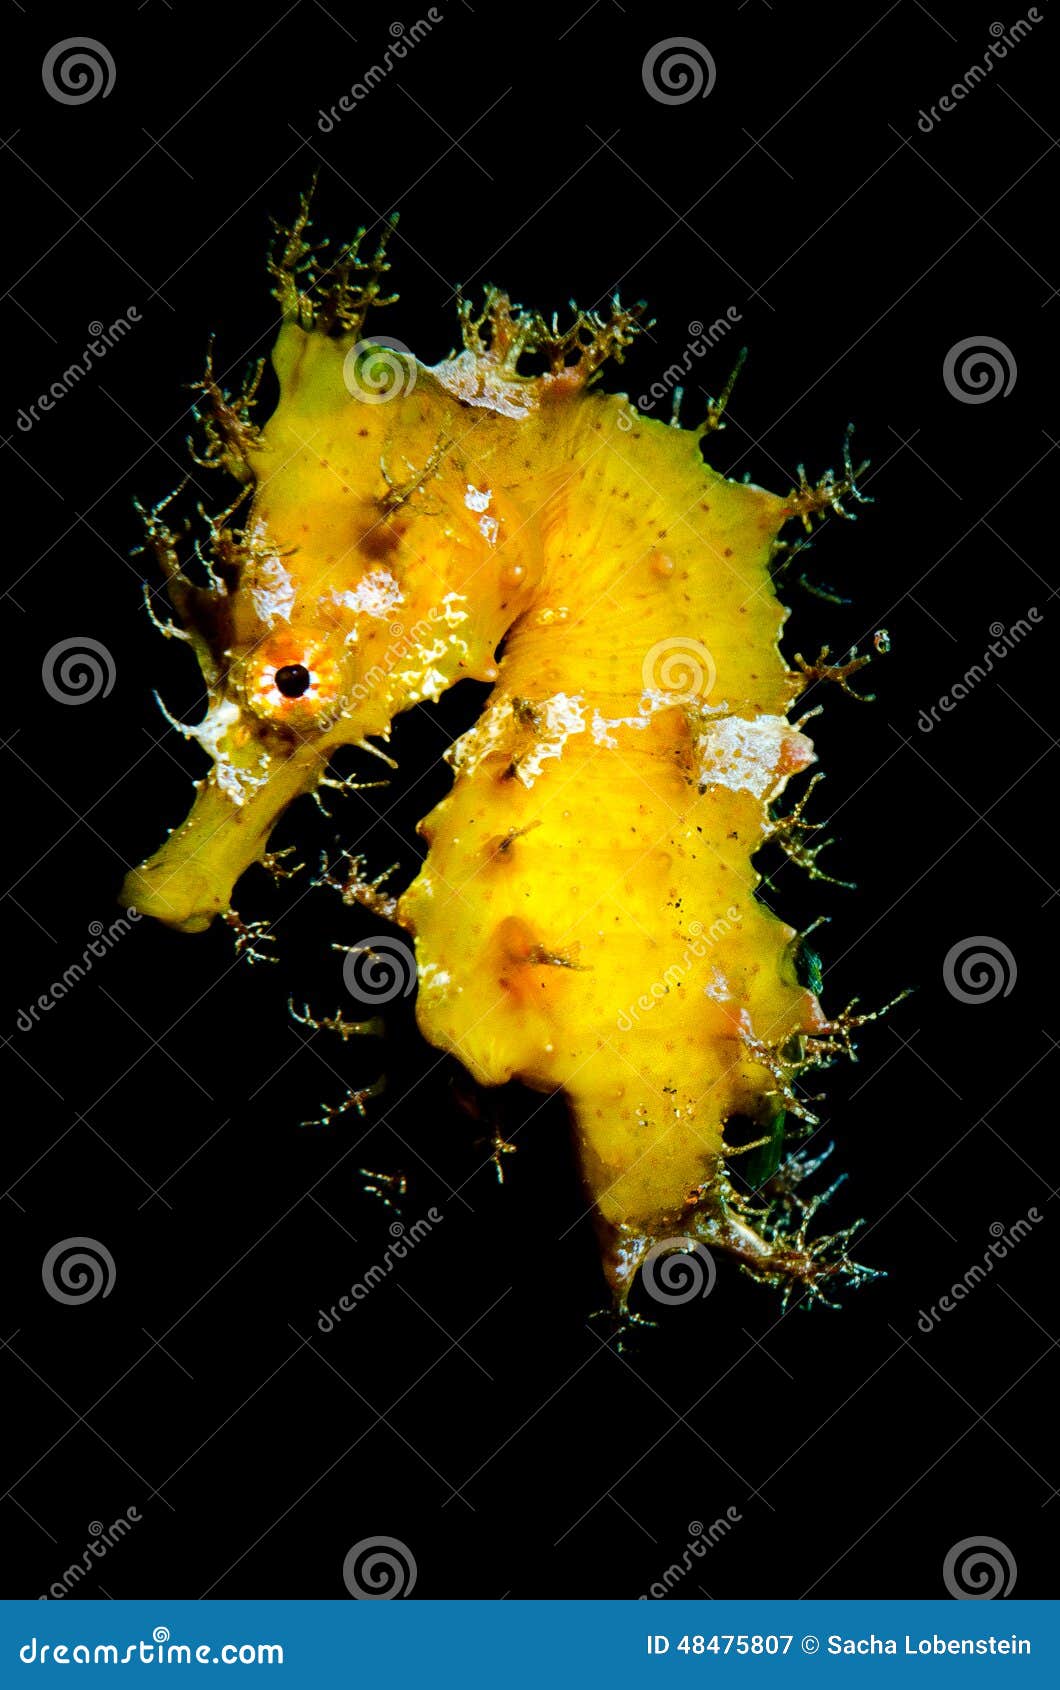 yellow seahorse, hippocampus hipocampus